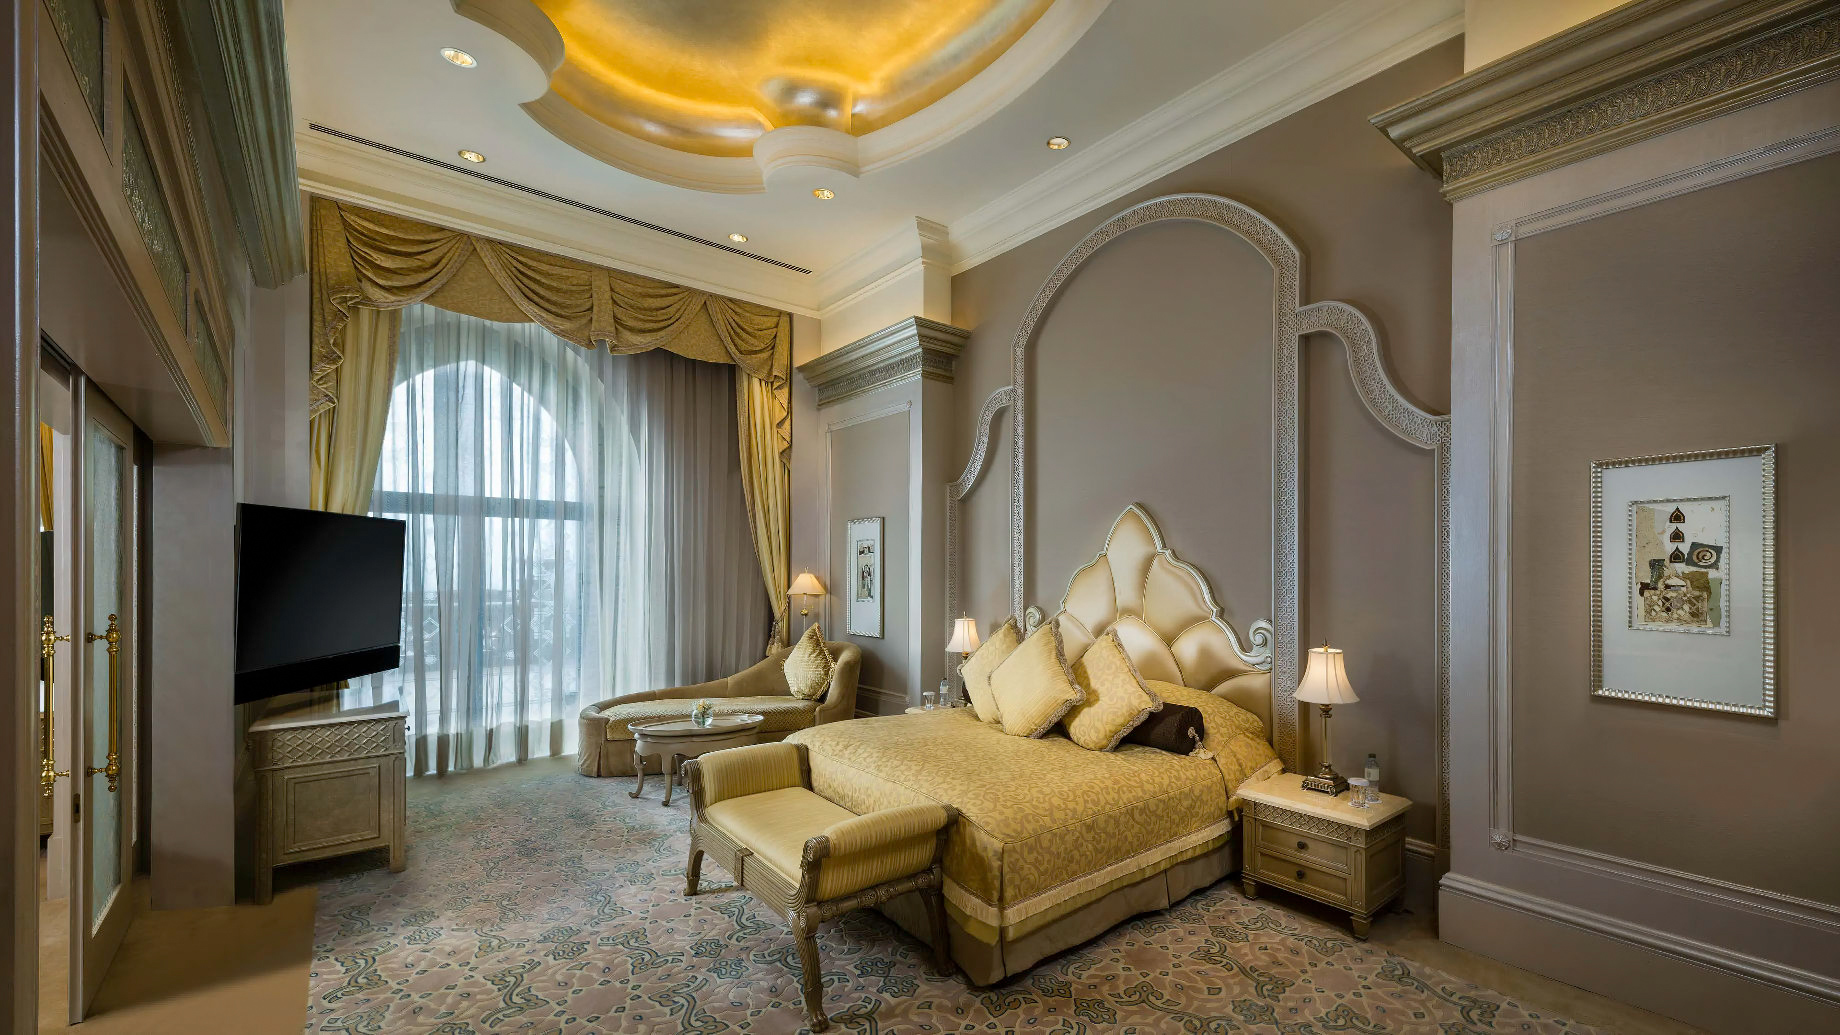 Emirates Palace Abu Dhabi Hotel – Abu Dhabi, UAE – Deluxe Palace Suite Bedroom